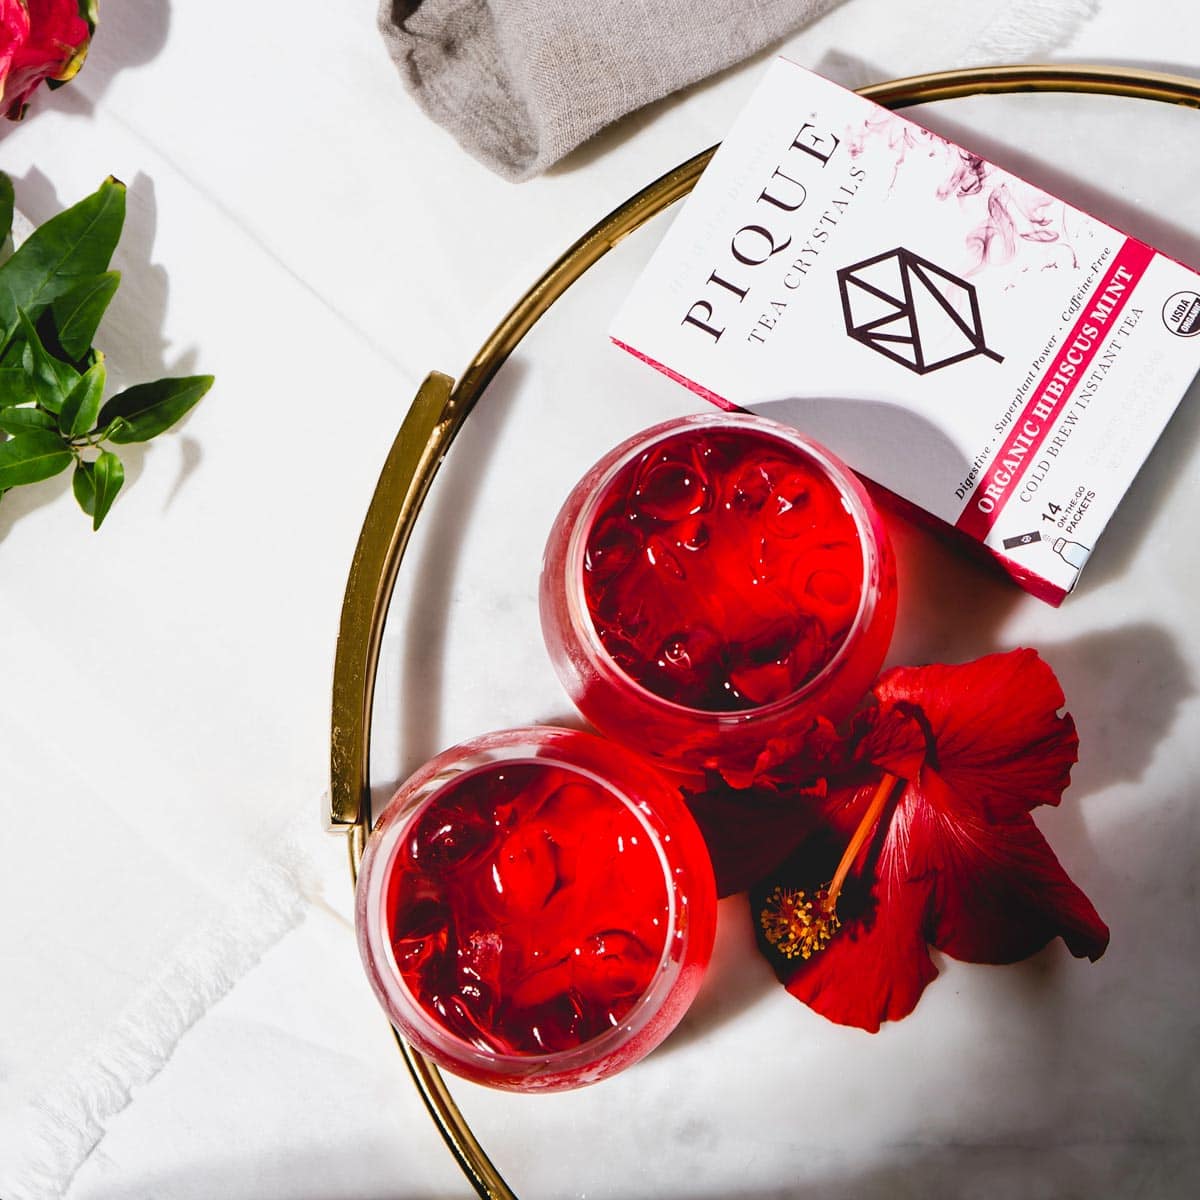 Hibiscus Beauty Elixir Pique Tea